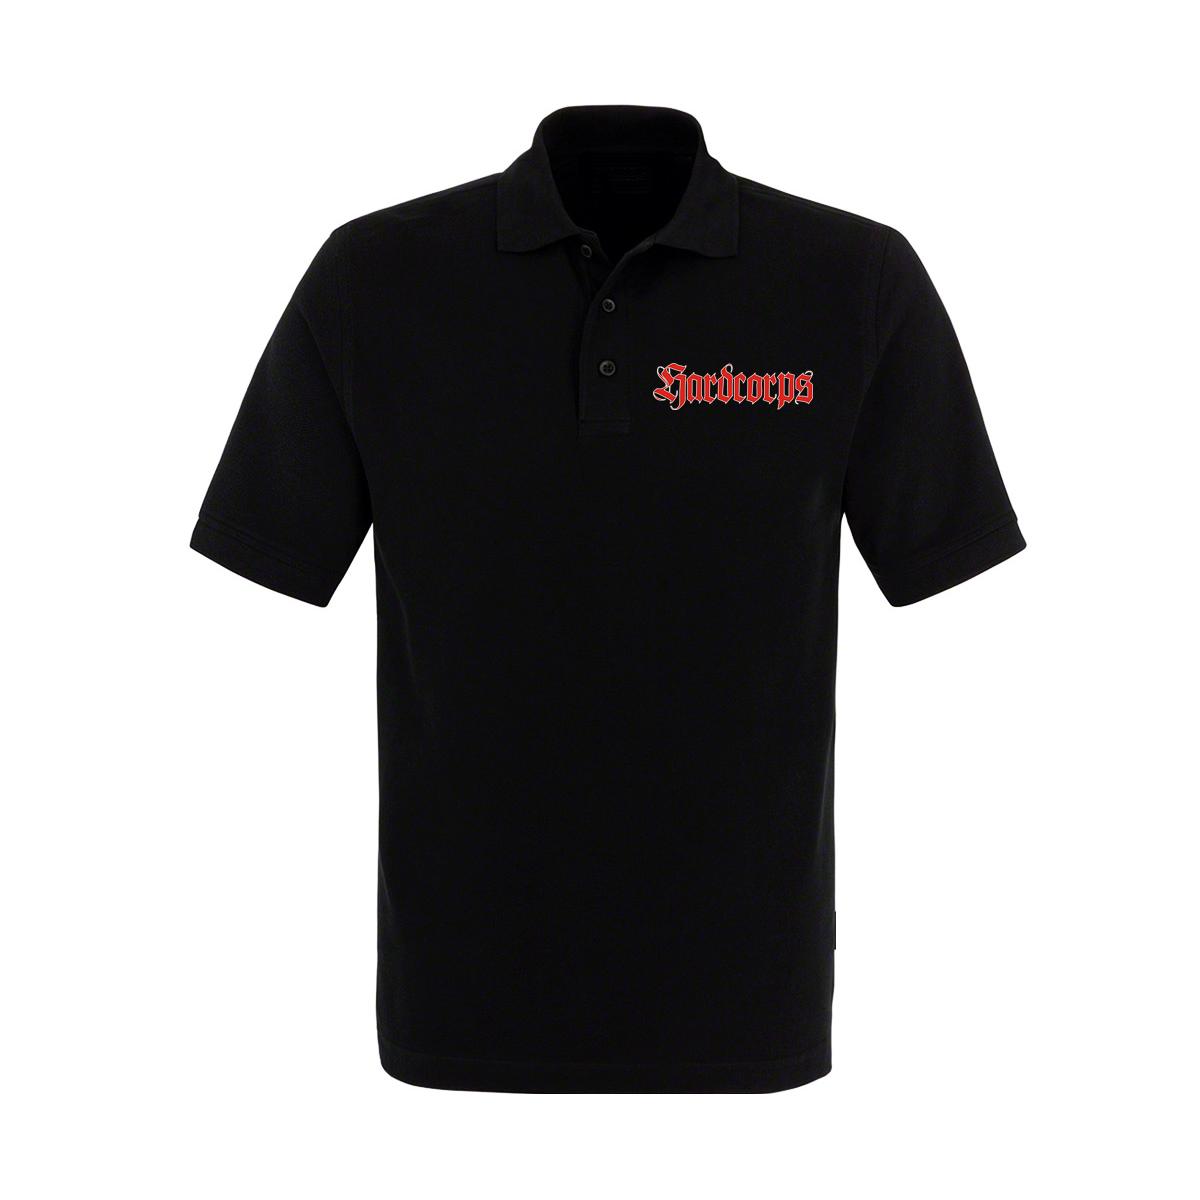 Hardcorps - Männer Polo Shirt - Geladen und entsichert - schwarz